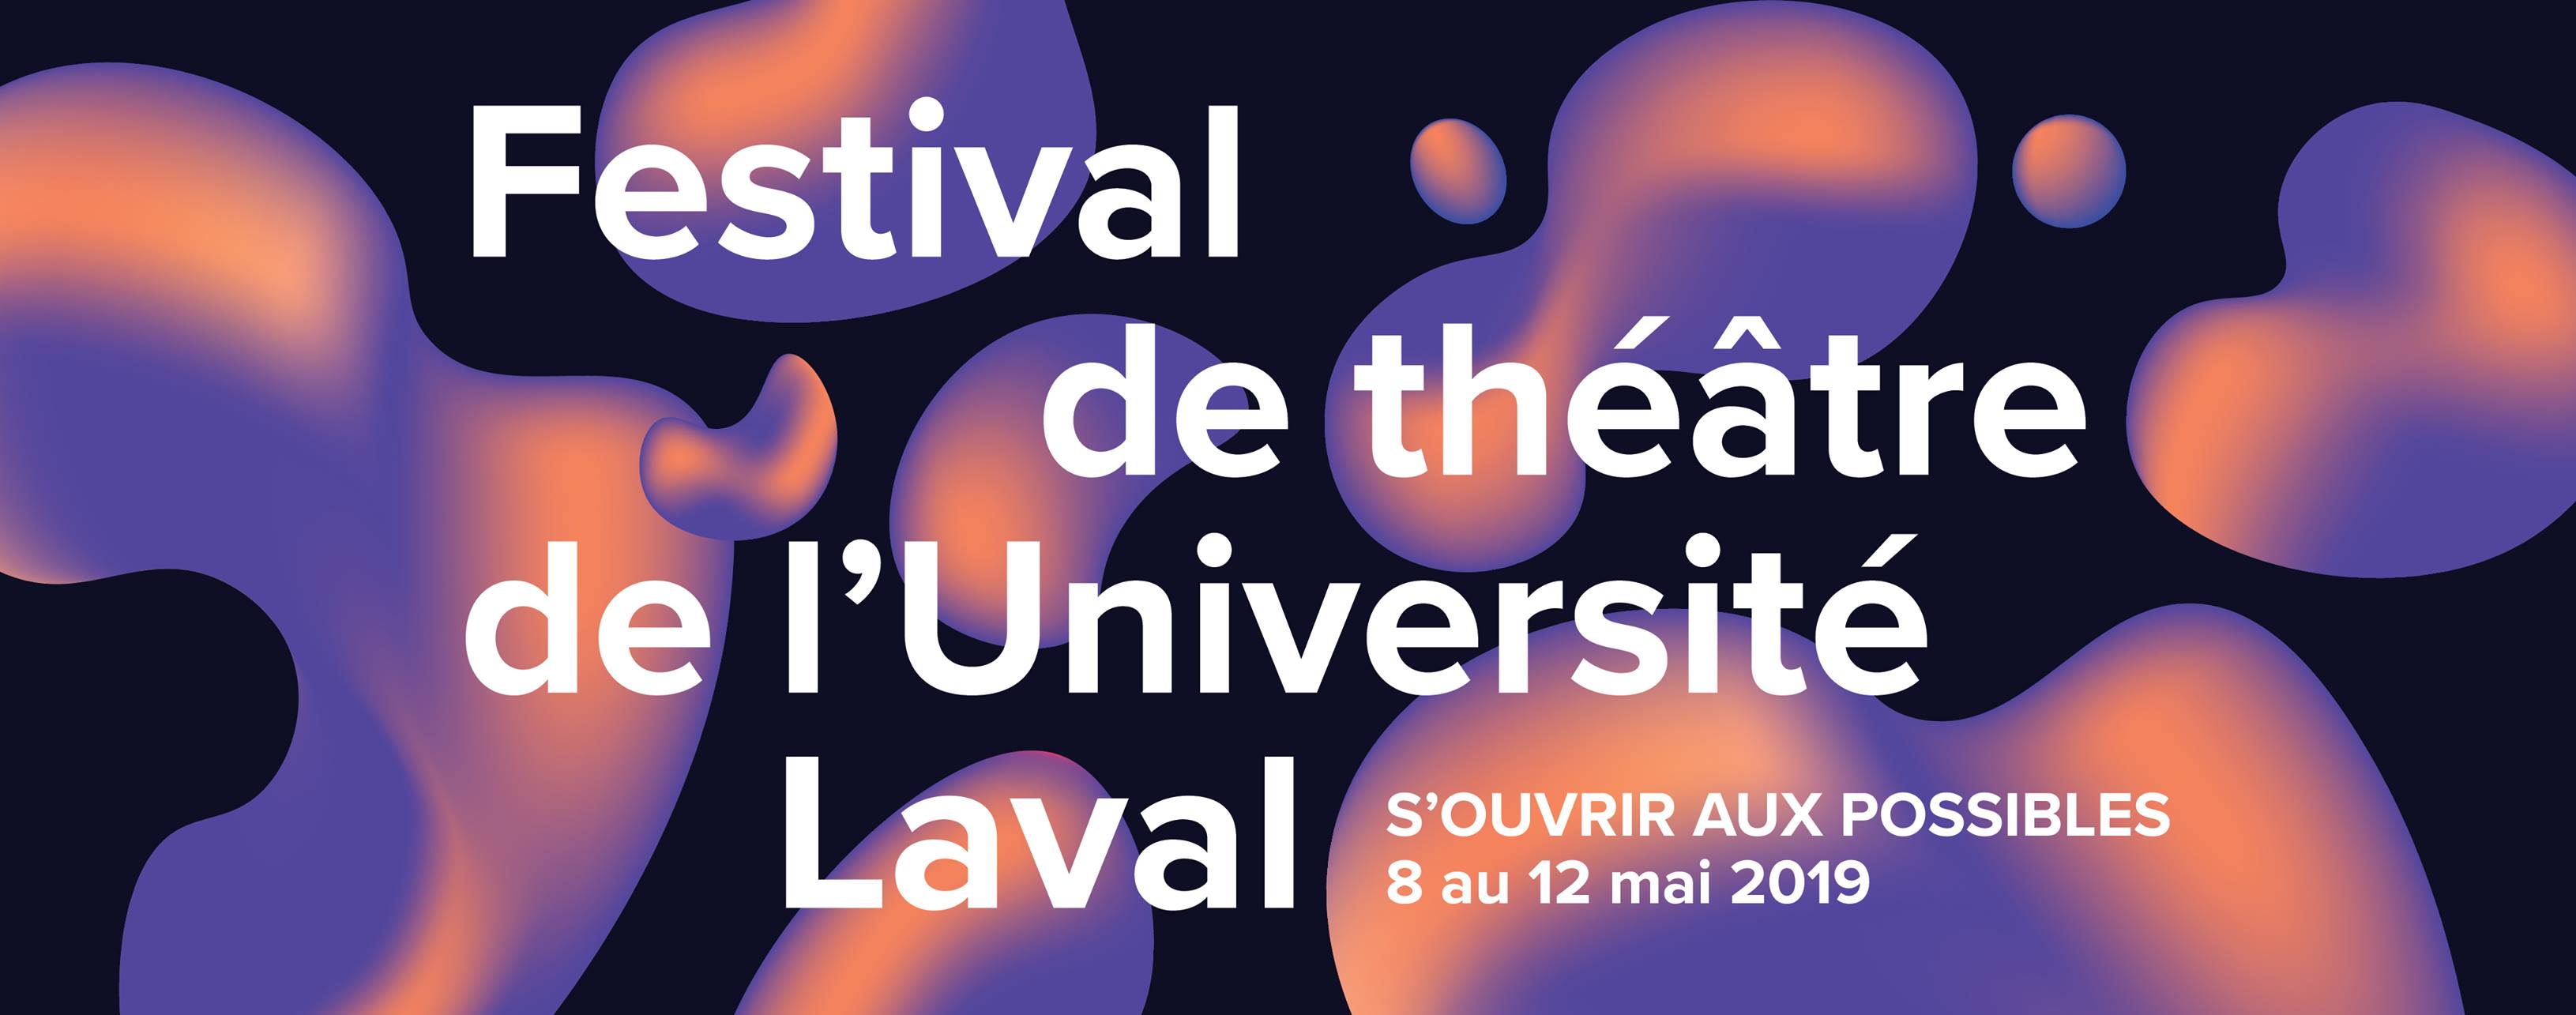 Festival de théâtre de l’Université Laval: Édition 2019